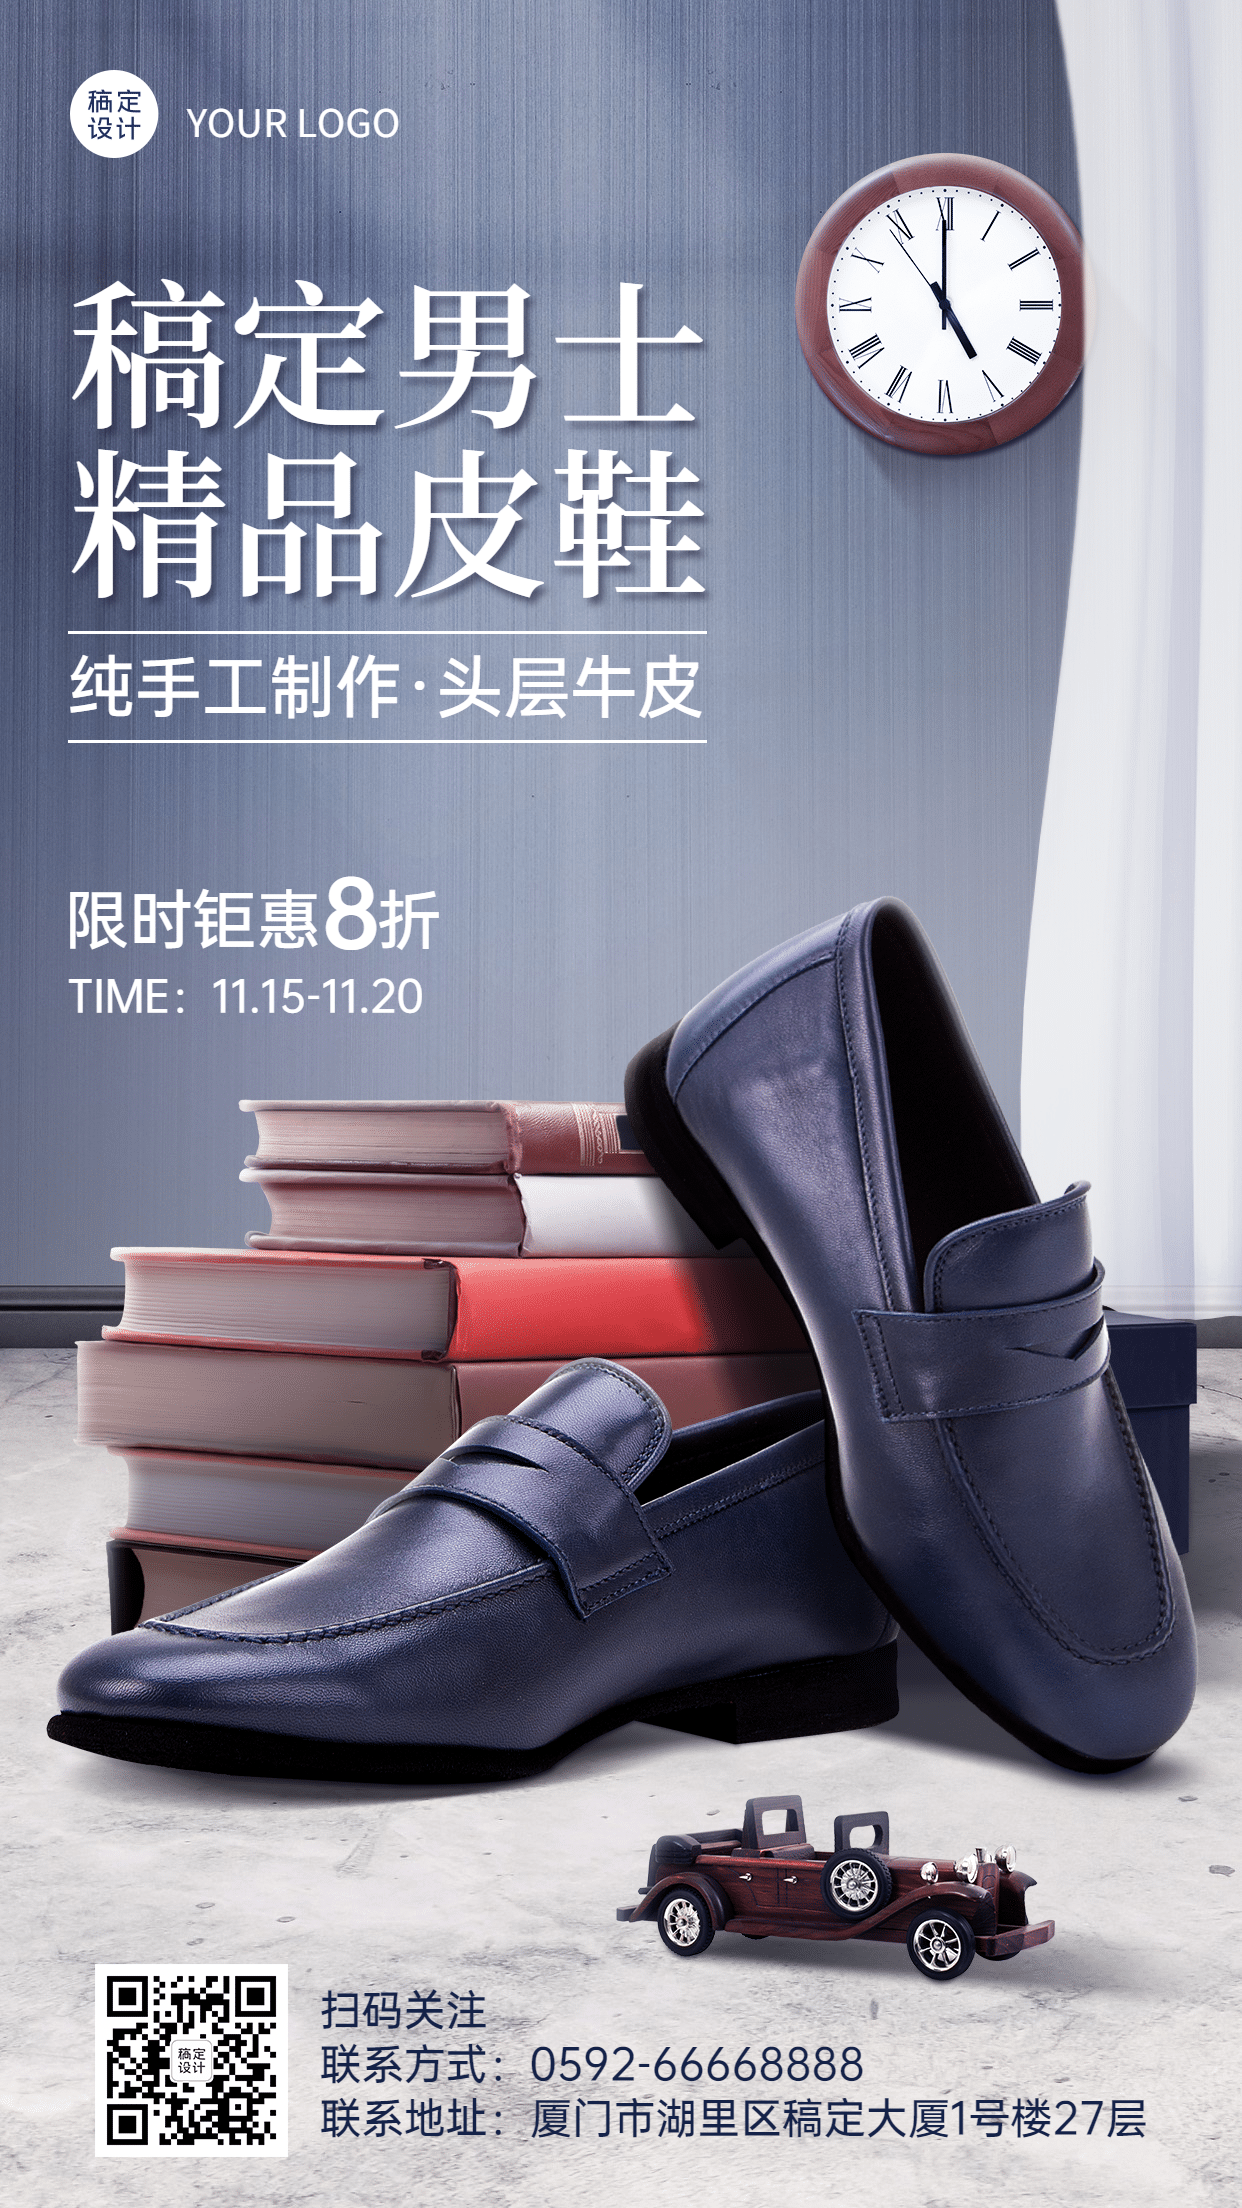 皮鞋品牌宣传产品展示手机海报预览效果